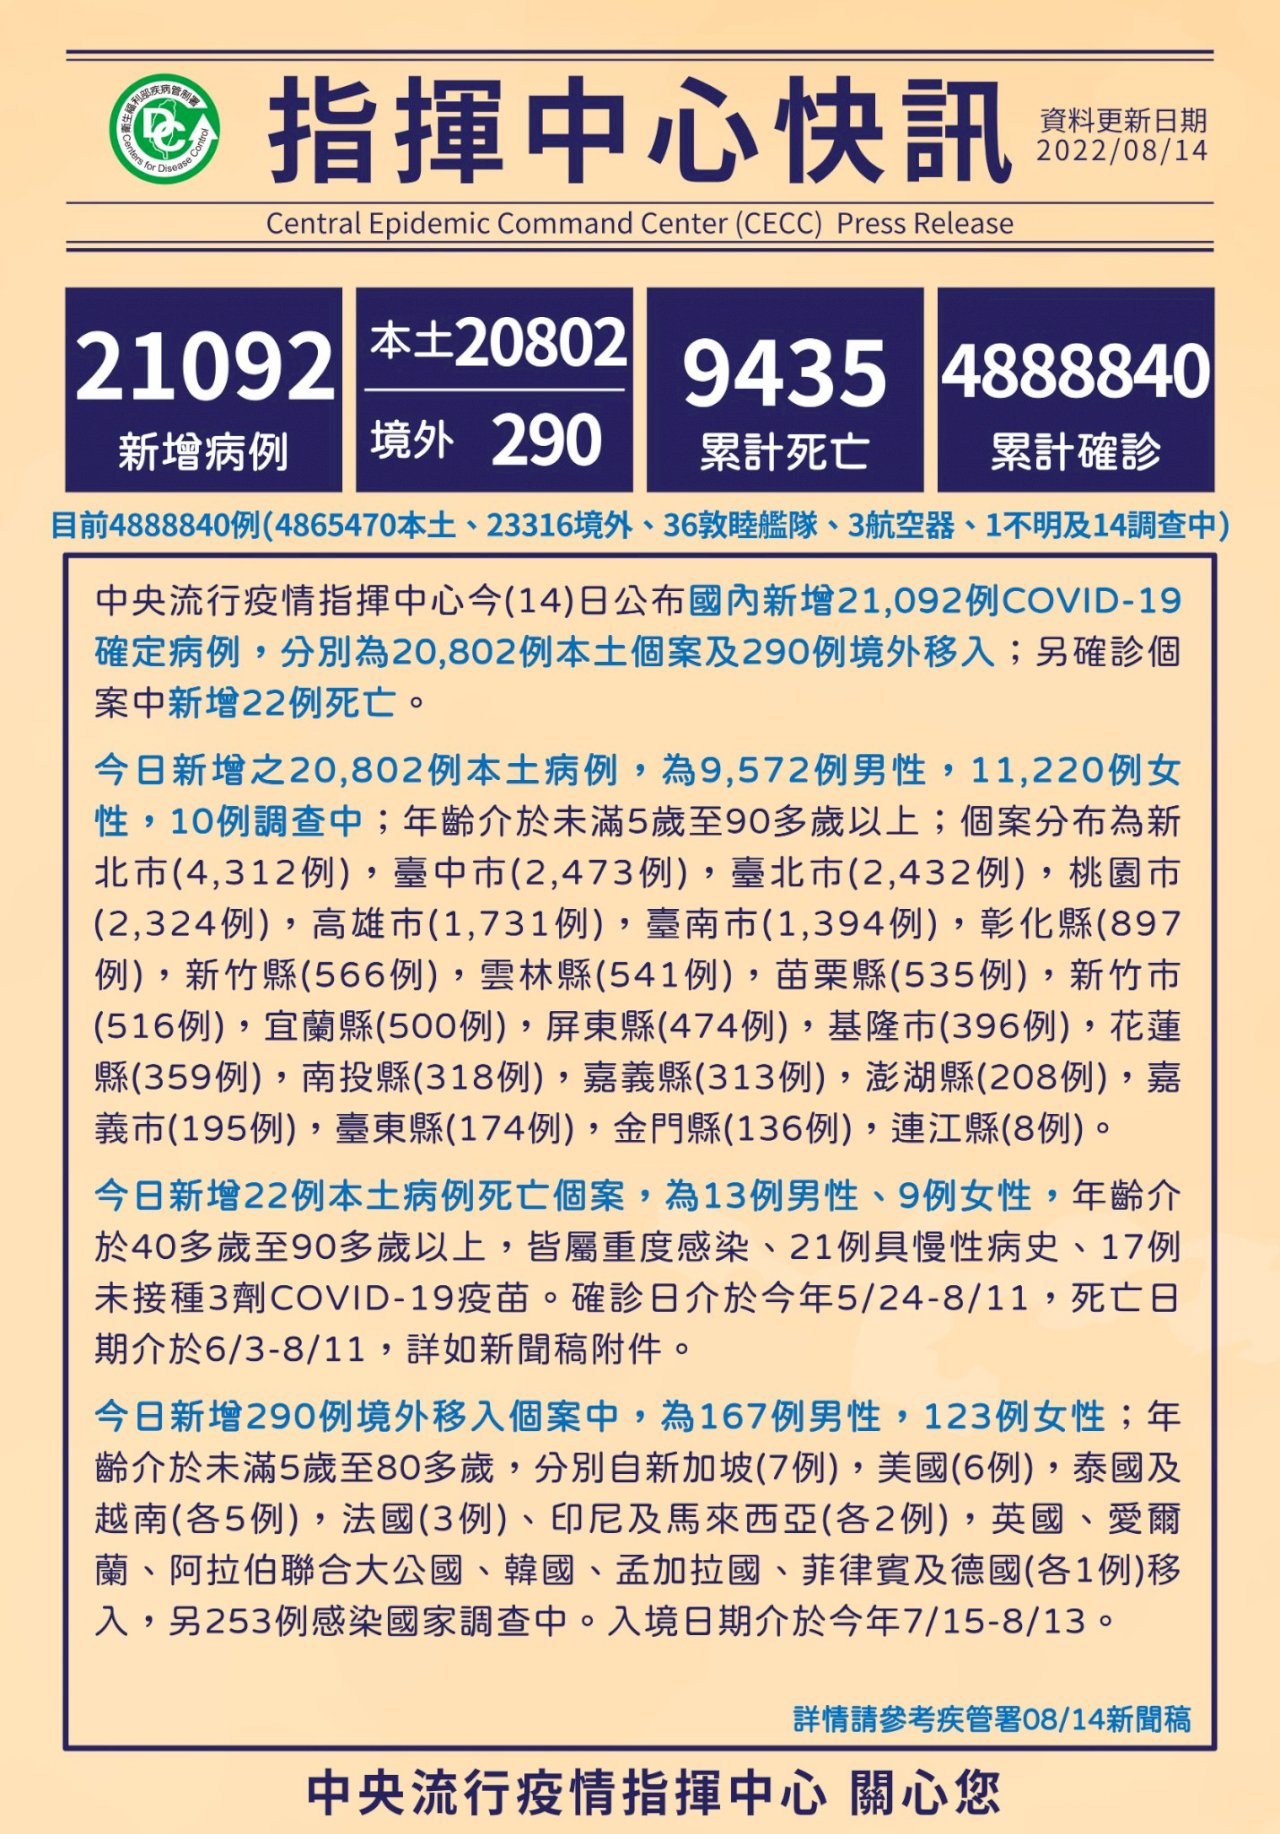 14/8, Đài Loan ghi nhận thêm 20.802 ca nhiễm COVID-19 trong nước, 290 ca từ nước ngoài, thêm 22 trường hợp tử vong. (Hình từ CECC)